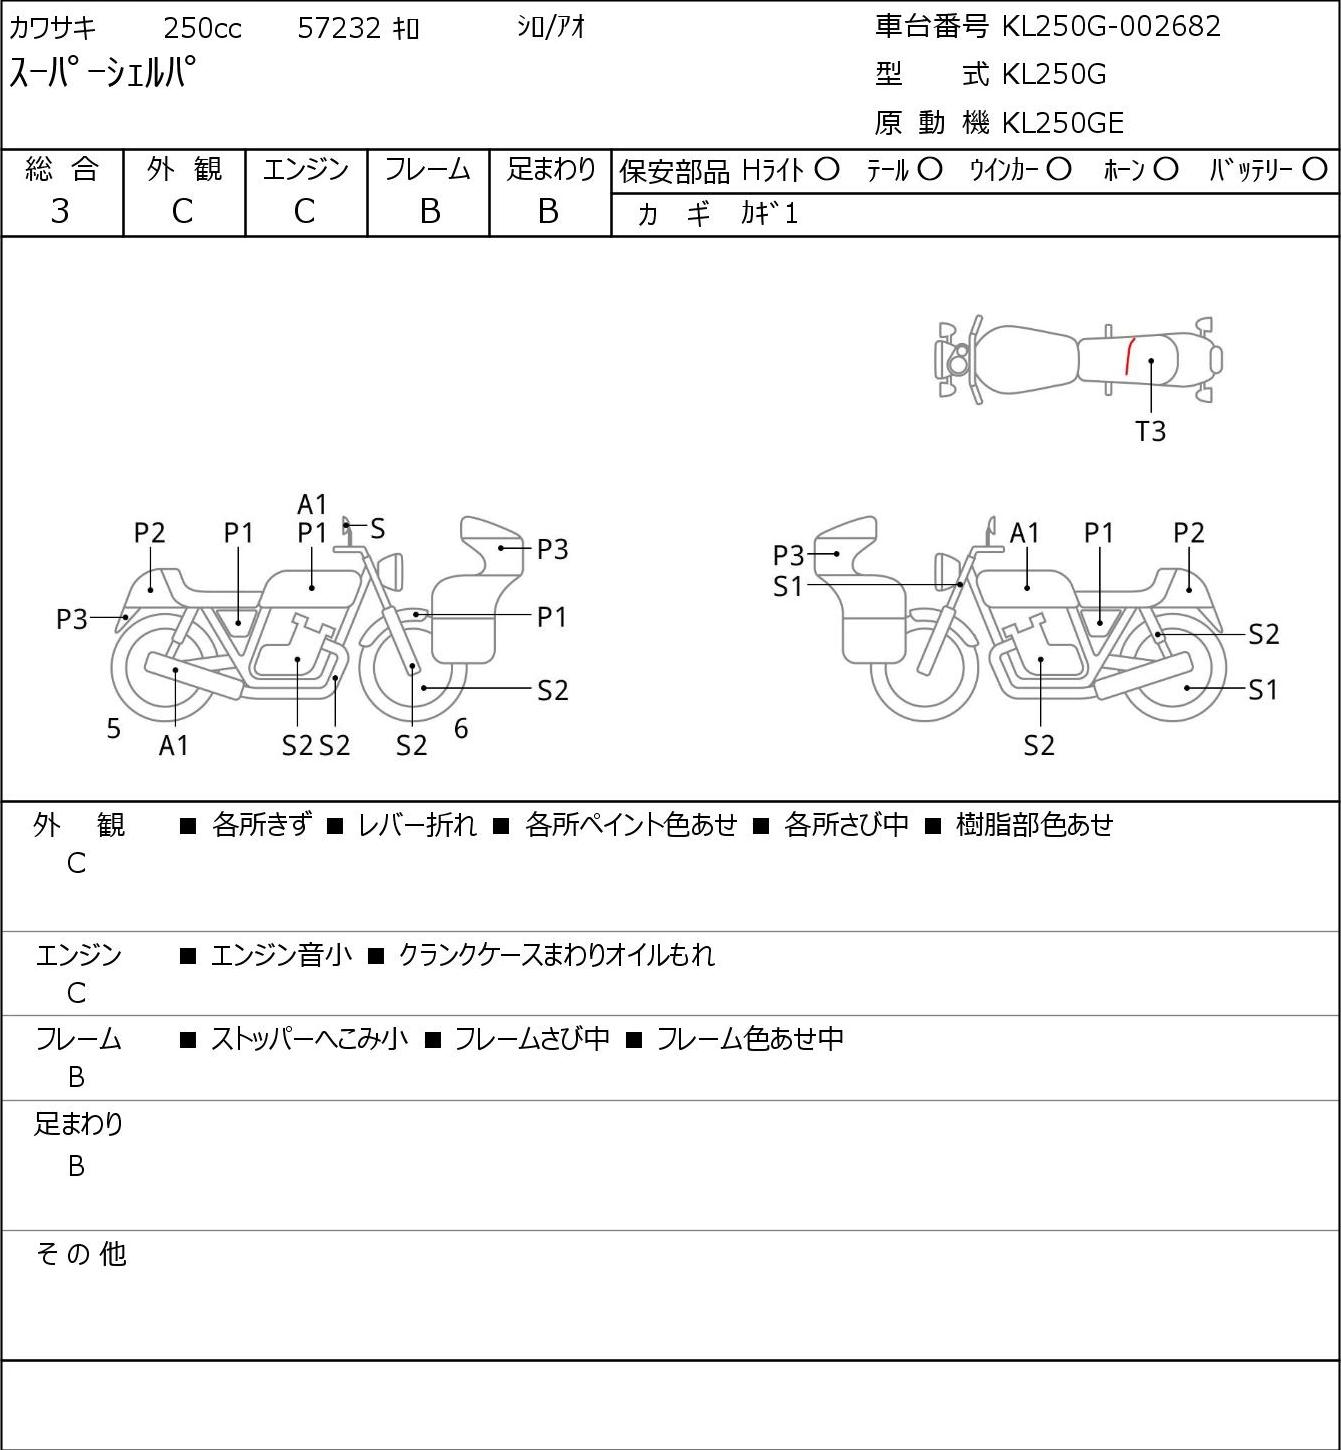 Kawasaki SUPER SHERPA KL250G 1997г. 57232